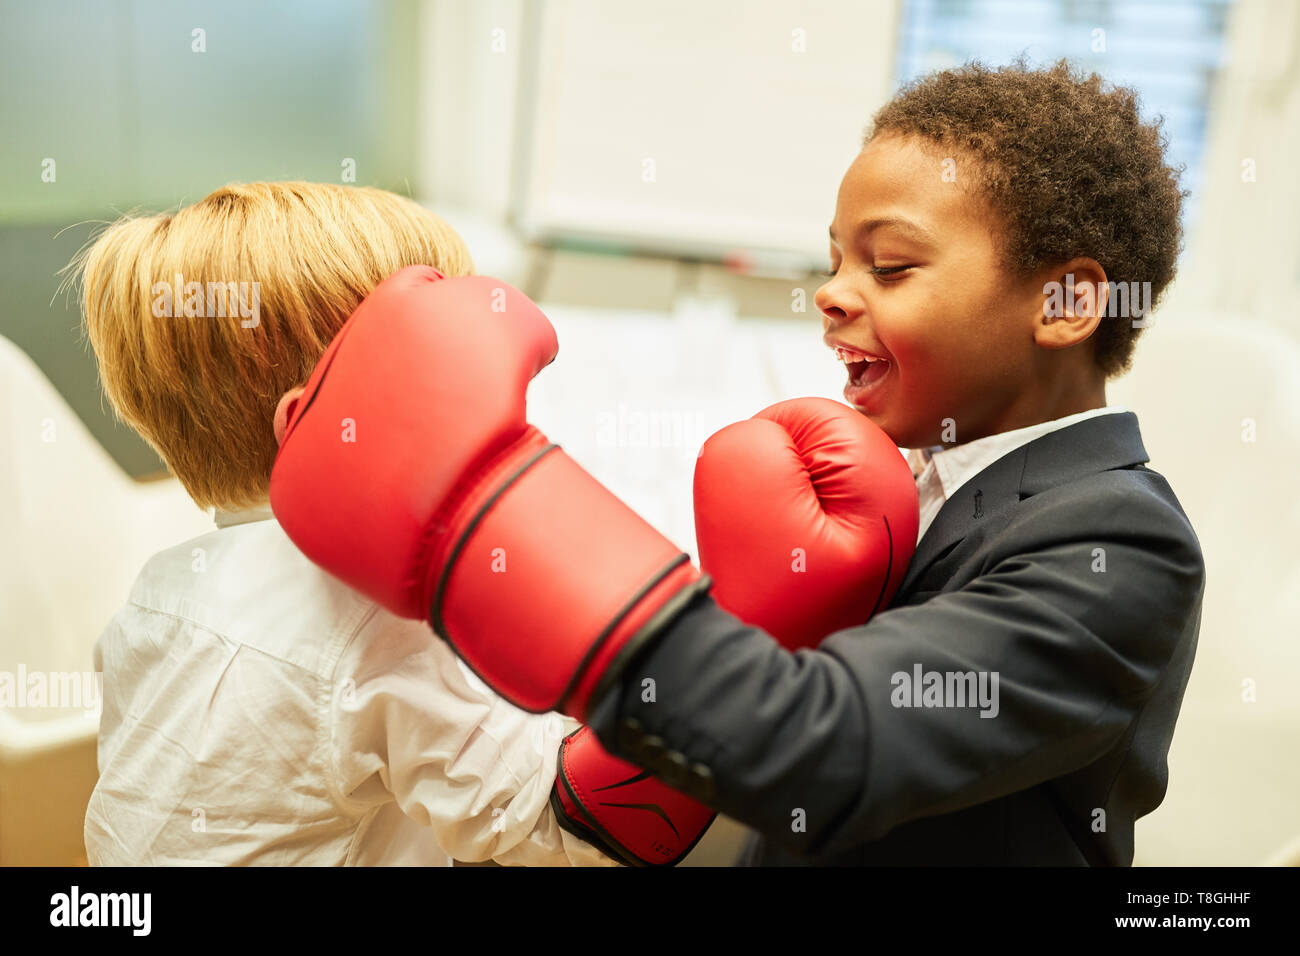 Kids boxing immagini e fotografie stock ad alta risoluzione - Alamy